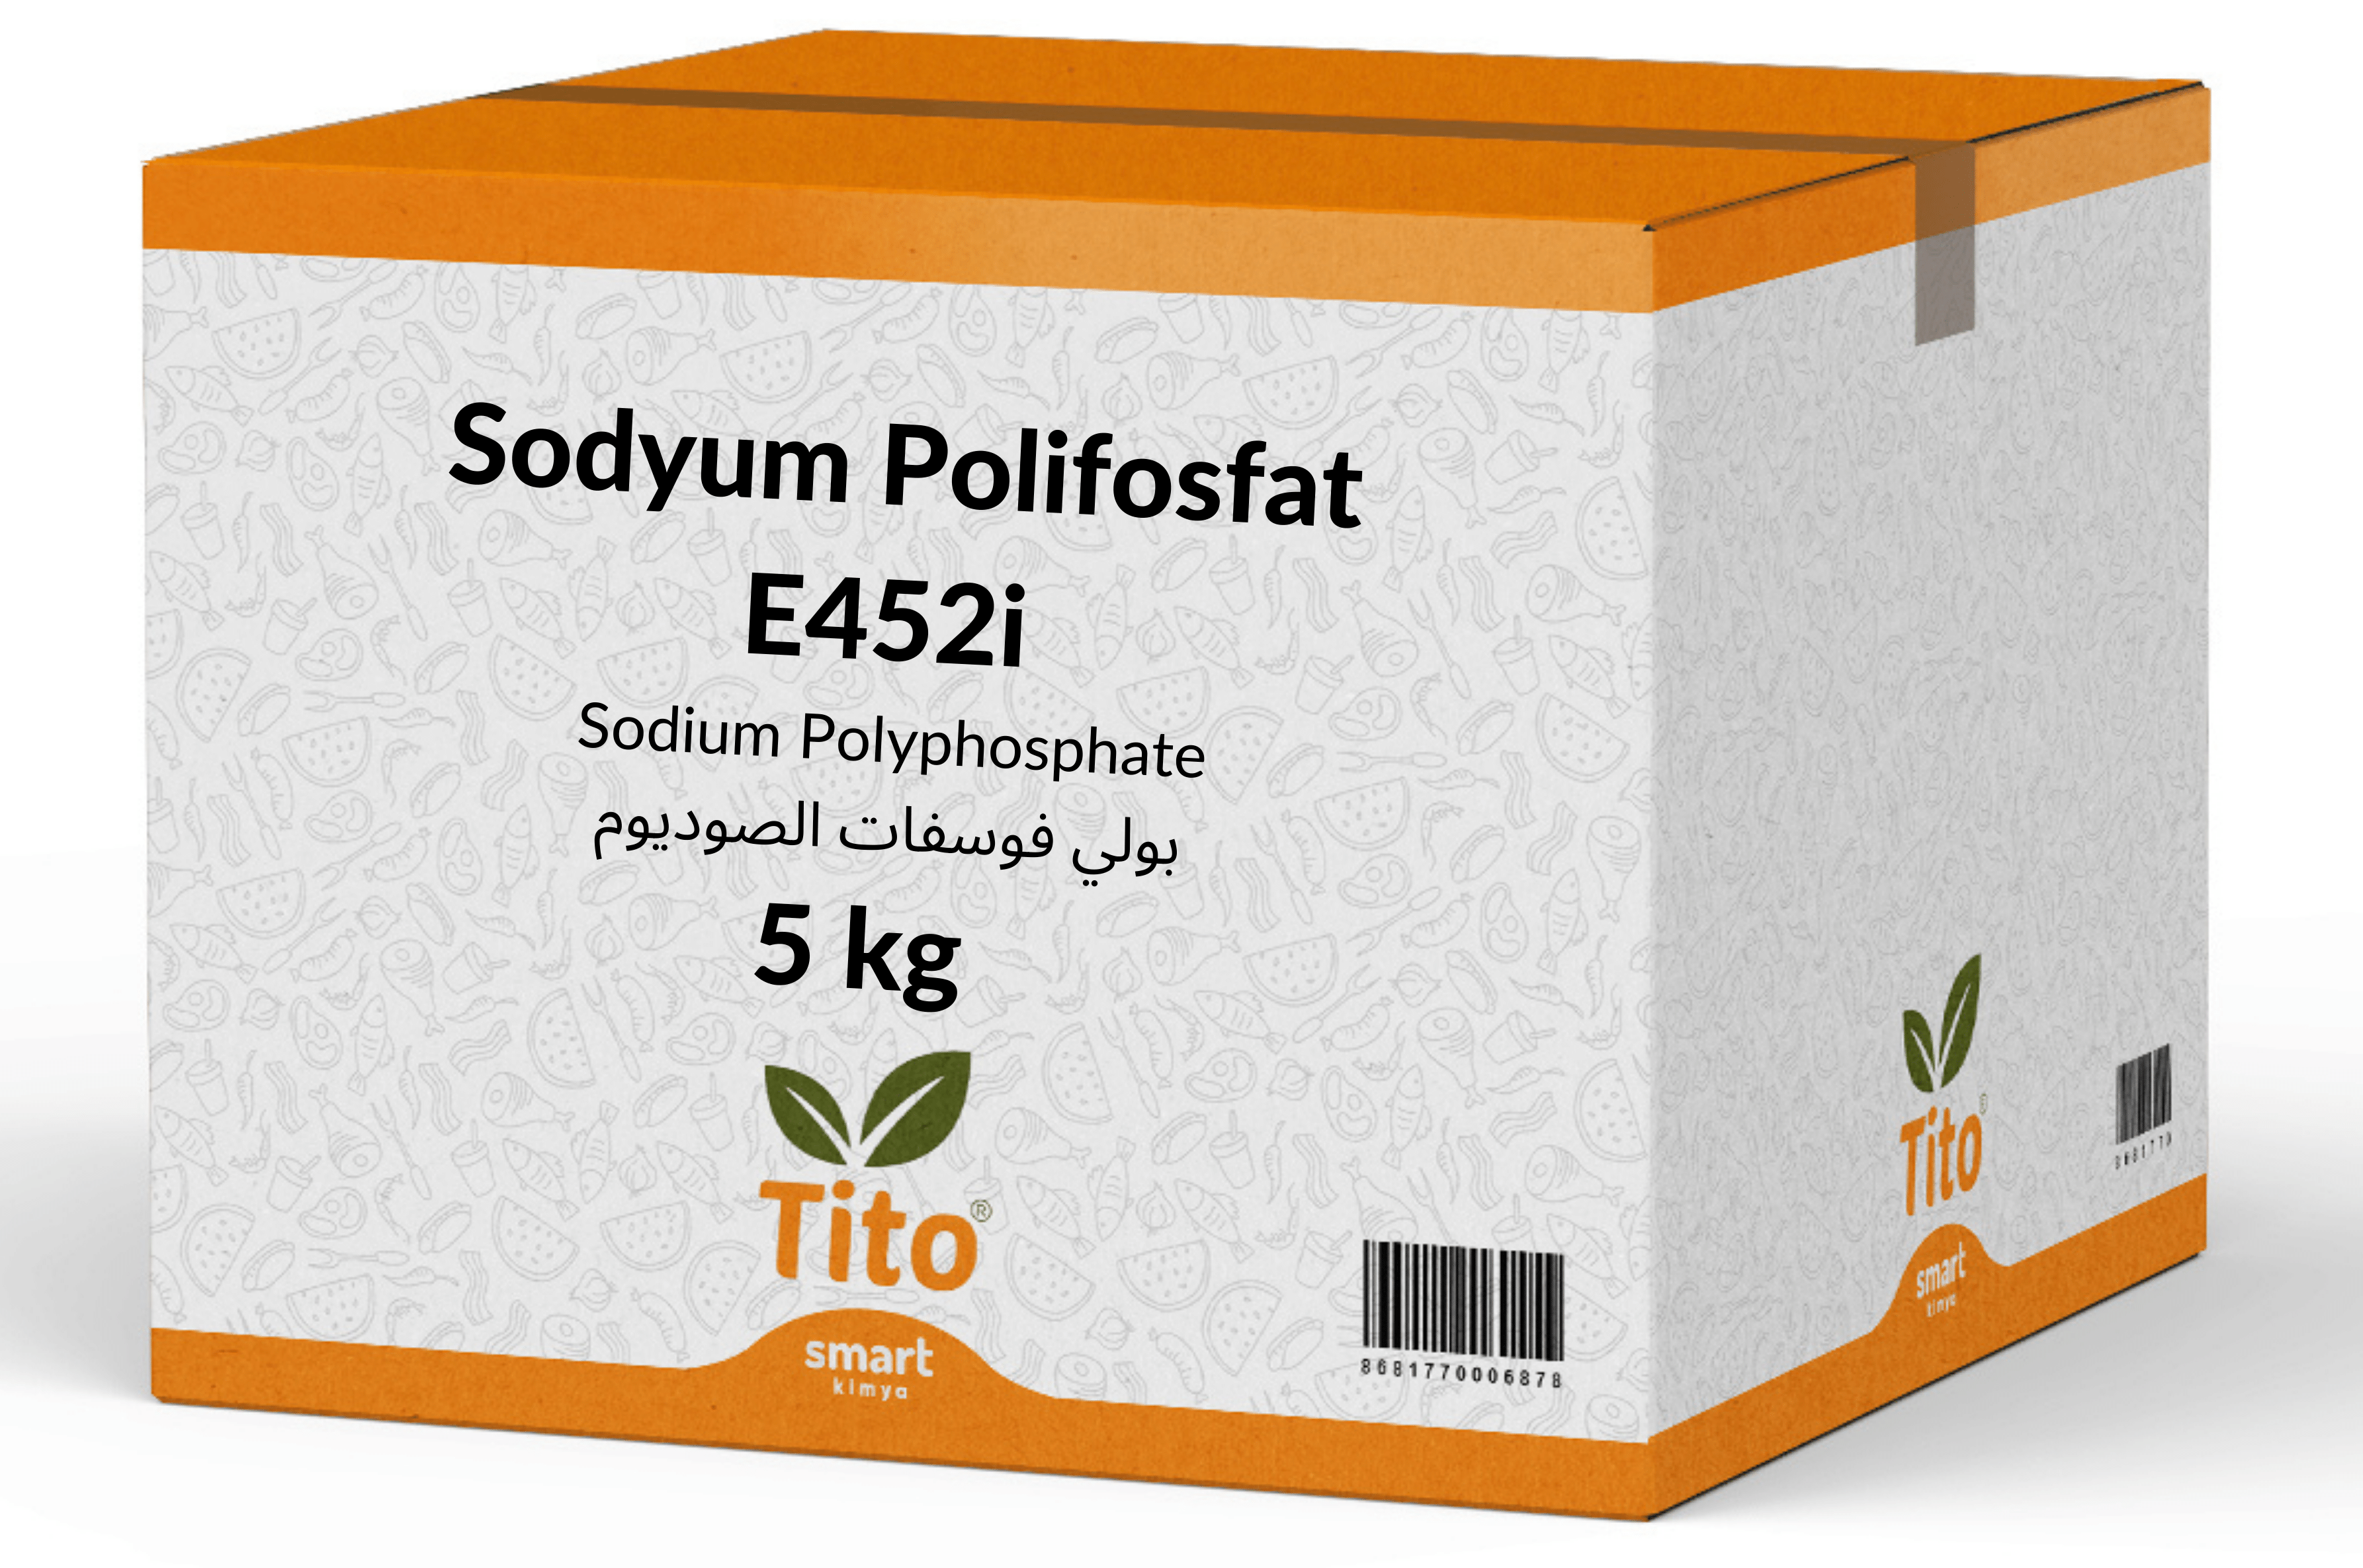 Sodyum Polifosfat E452i 5 kg